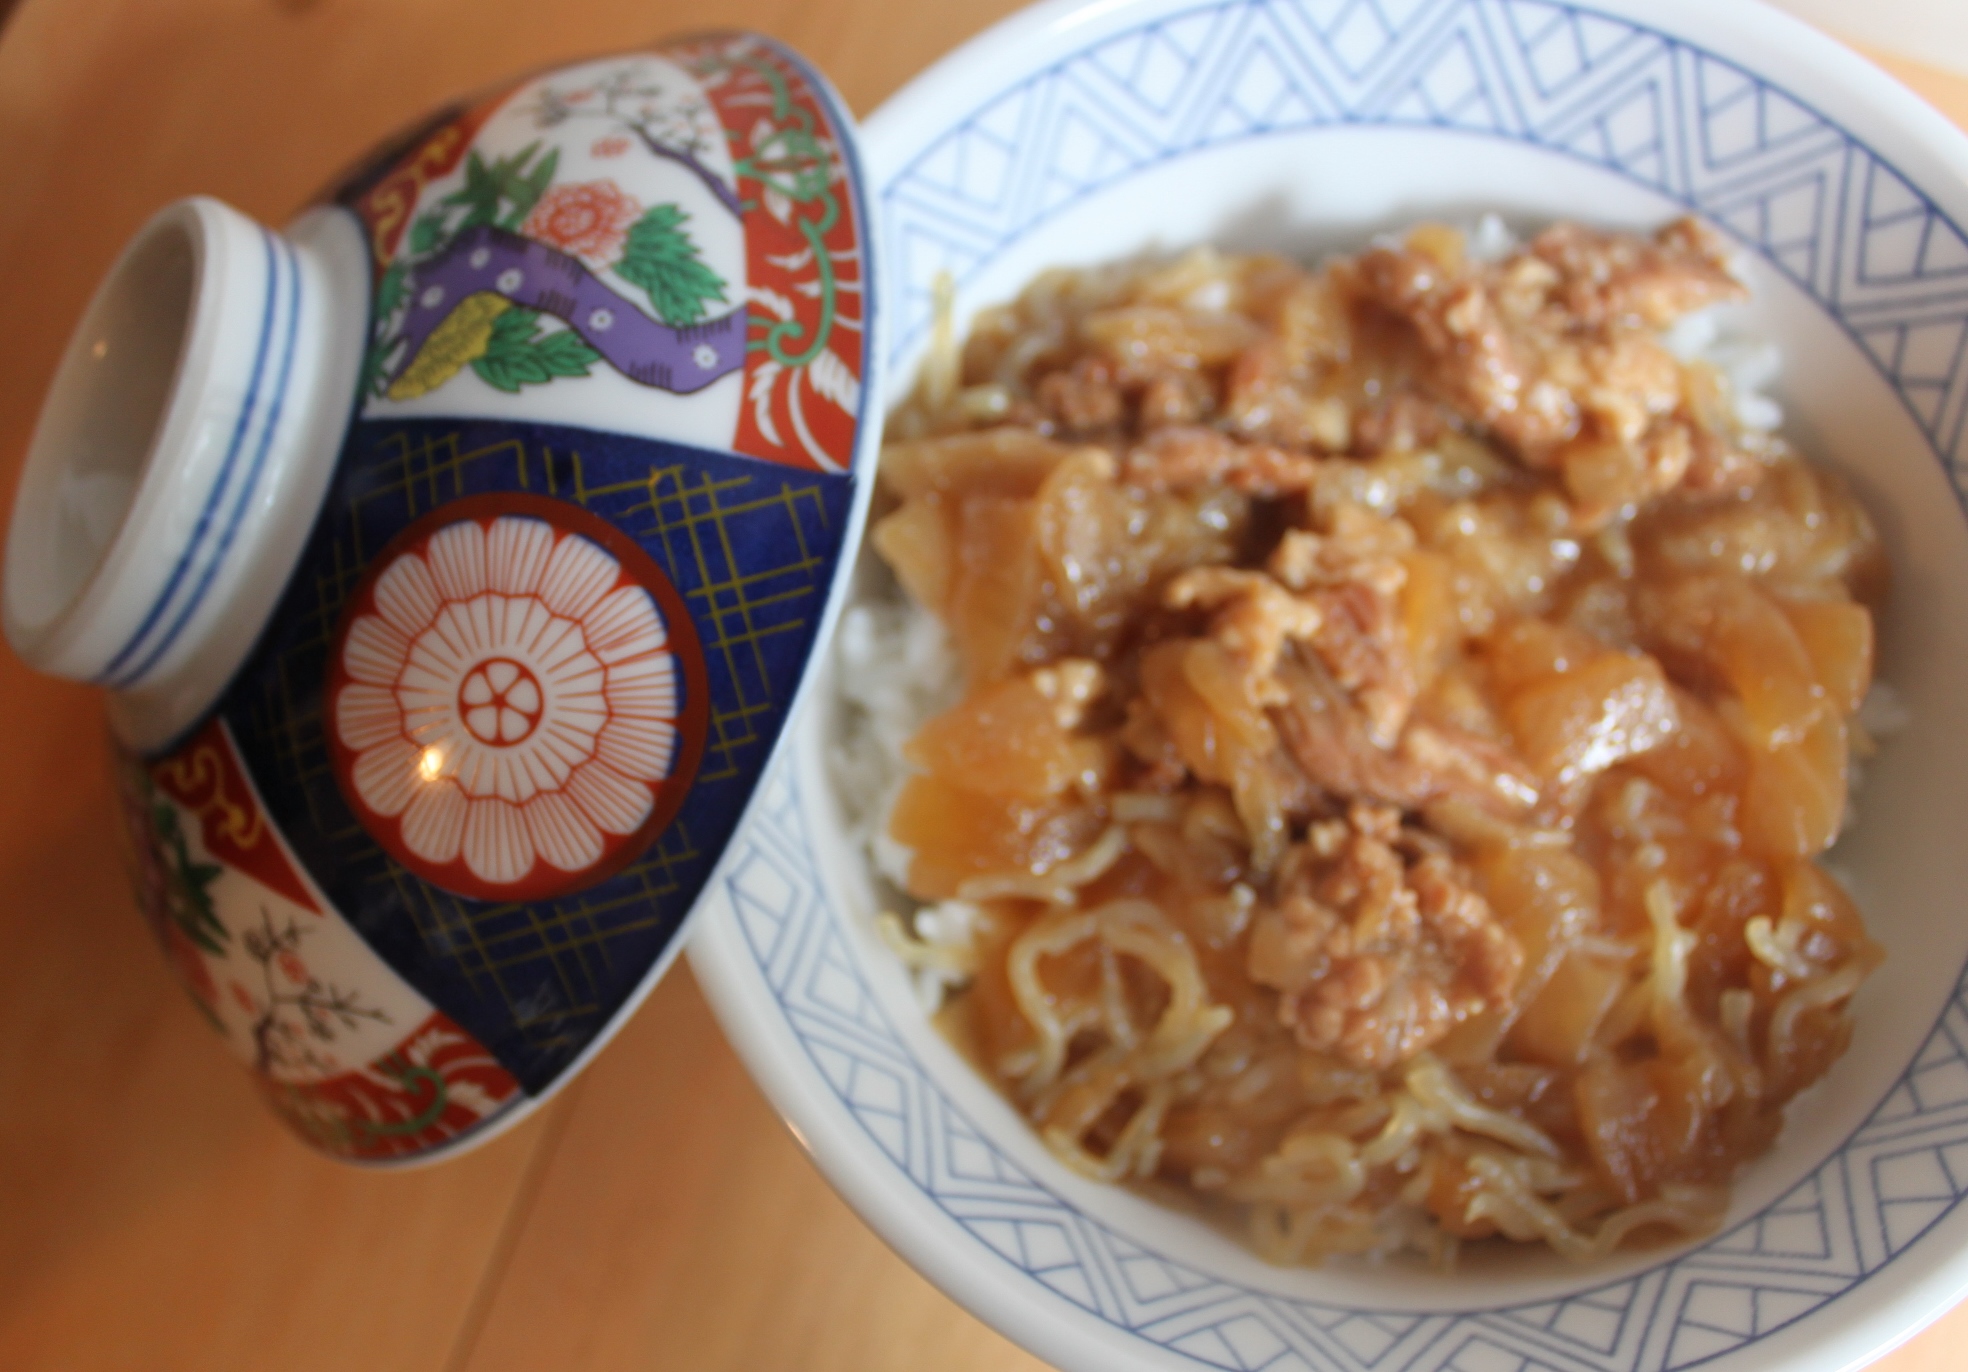 ふた付き丼 錦 Lunch bowl with a lid/brocade/Aichi pref. – 倉日用商店